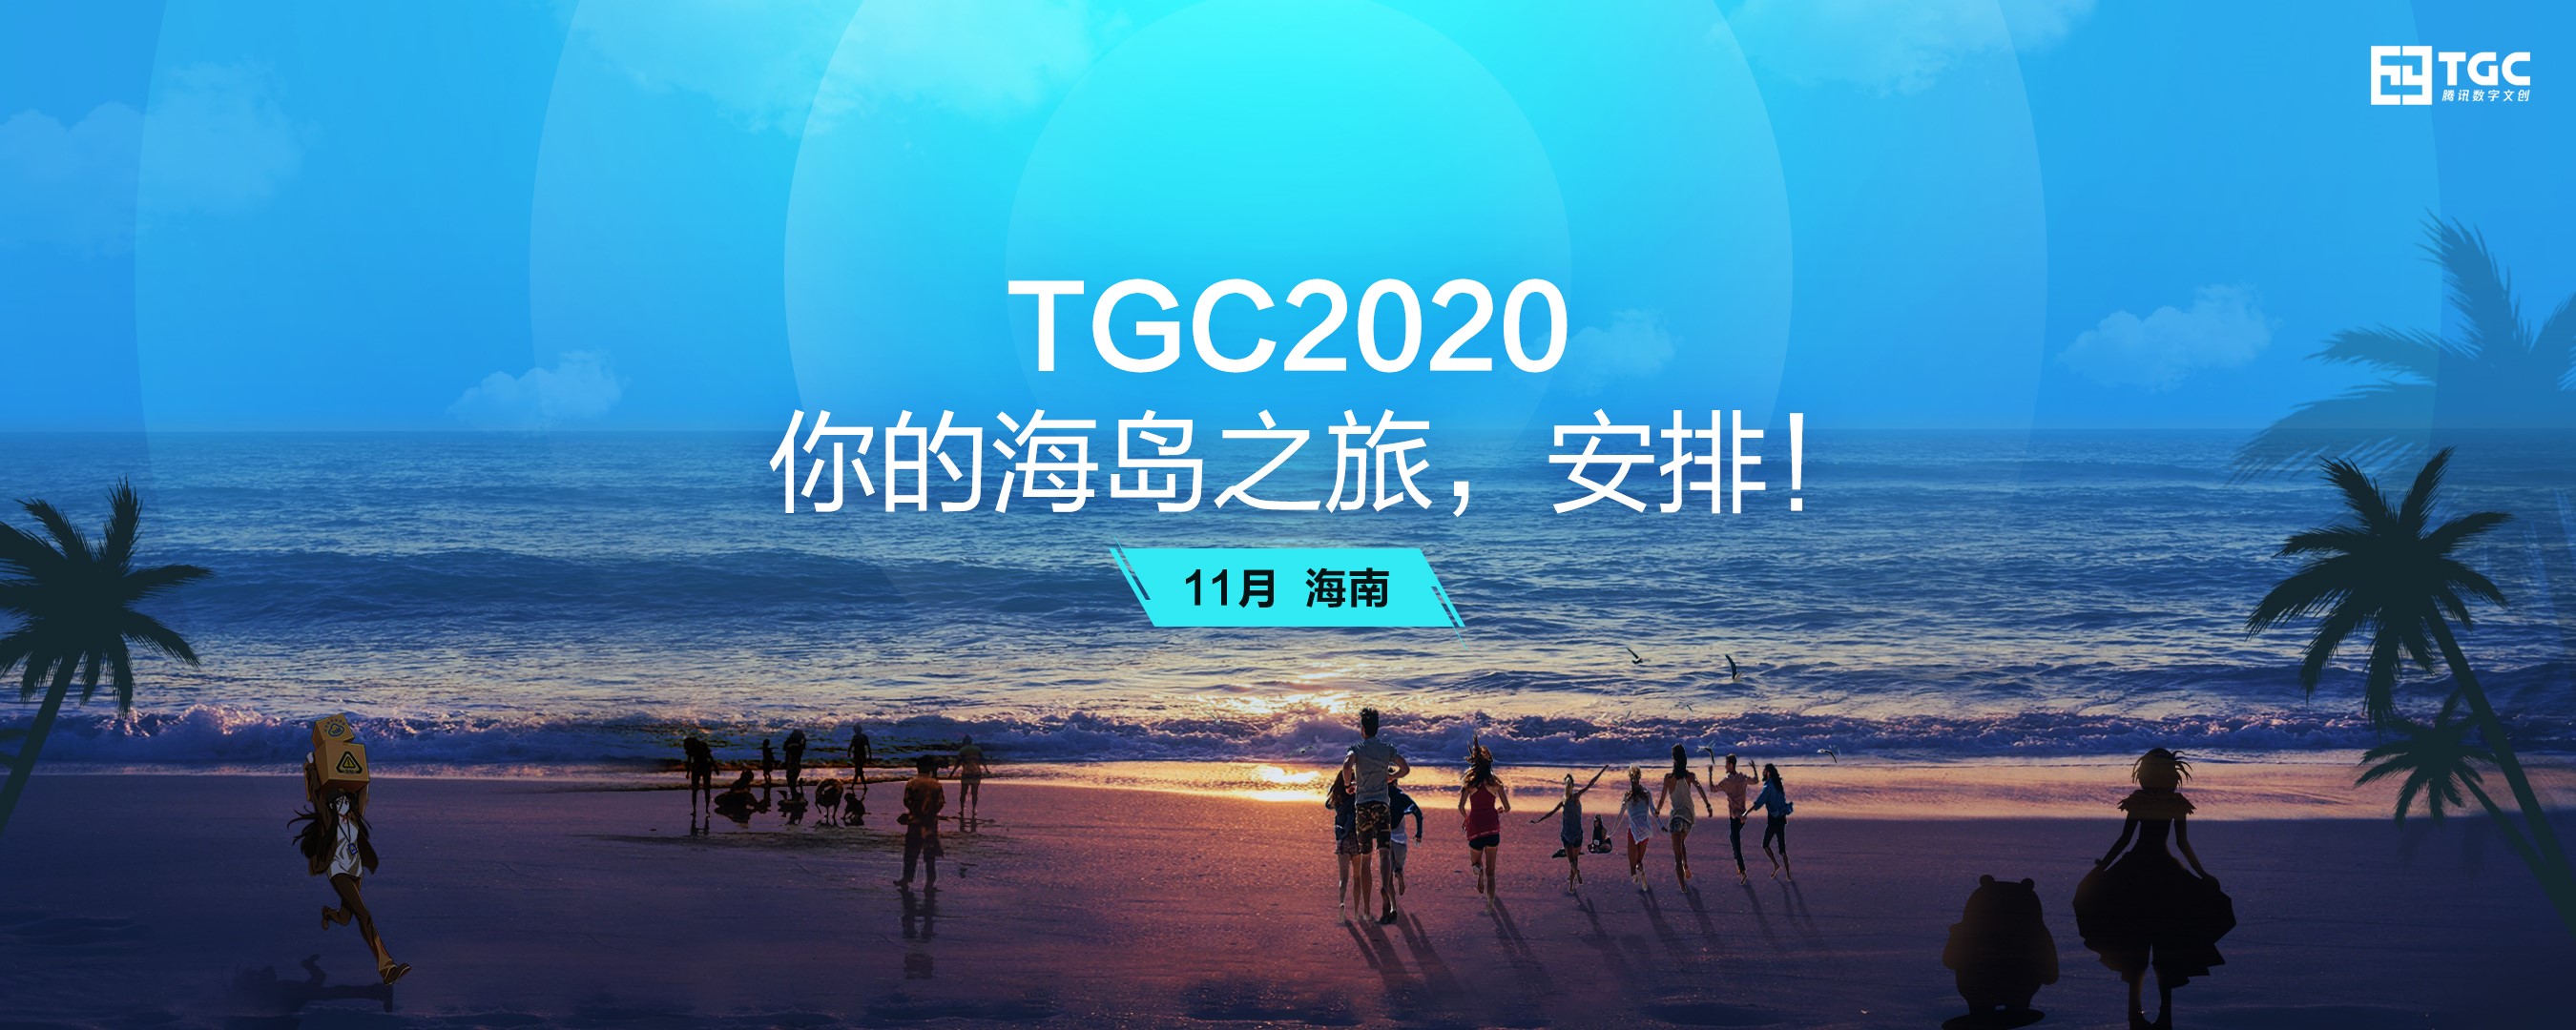 2020 TGC腾讯数字文创节年度盛典再度落地海南 新文创体验升级不断